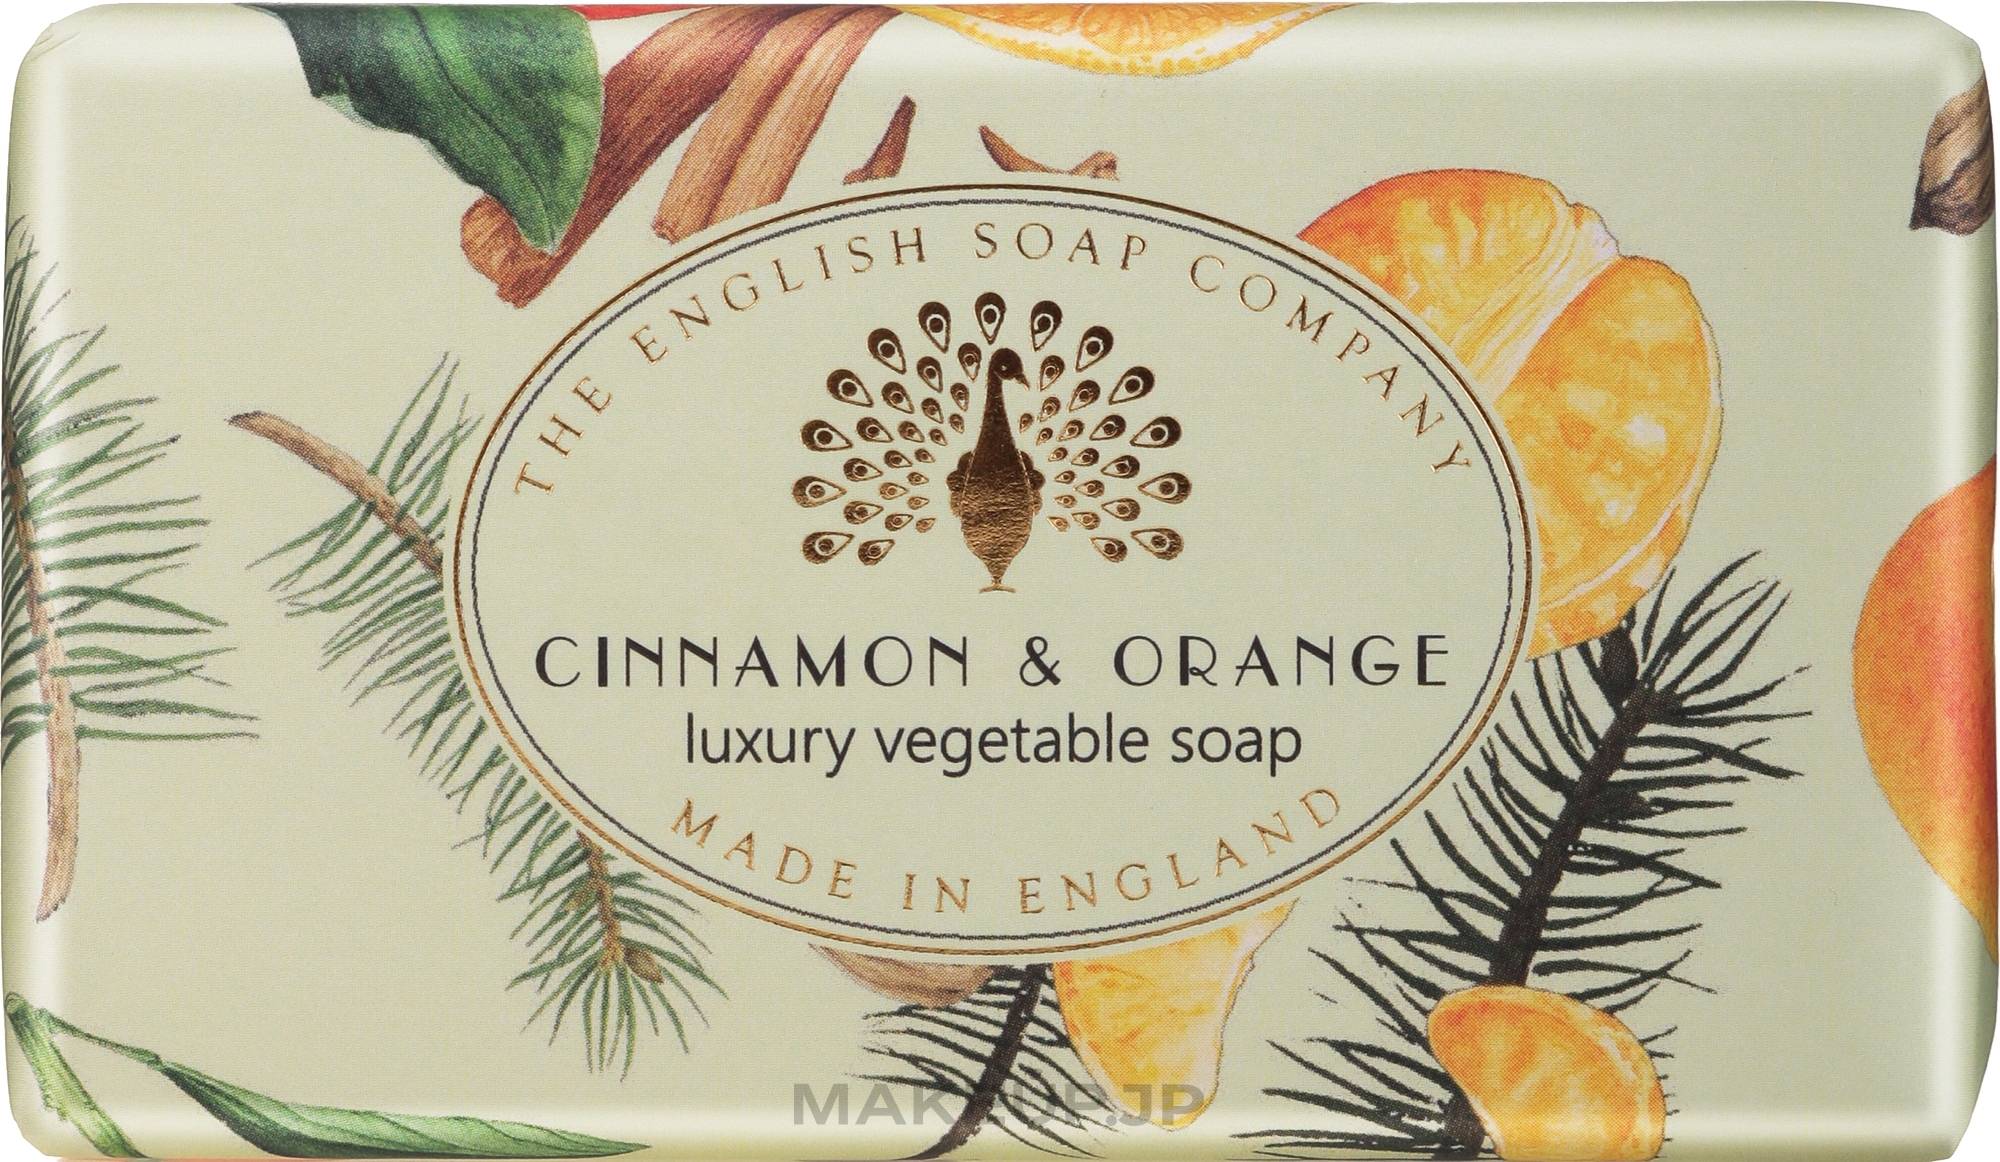 Cinnamon & Orange Soap - The English Soap Company Vintage Collection Cinnamon & Orange Soap — photo 190 g